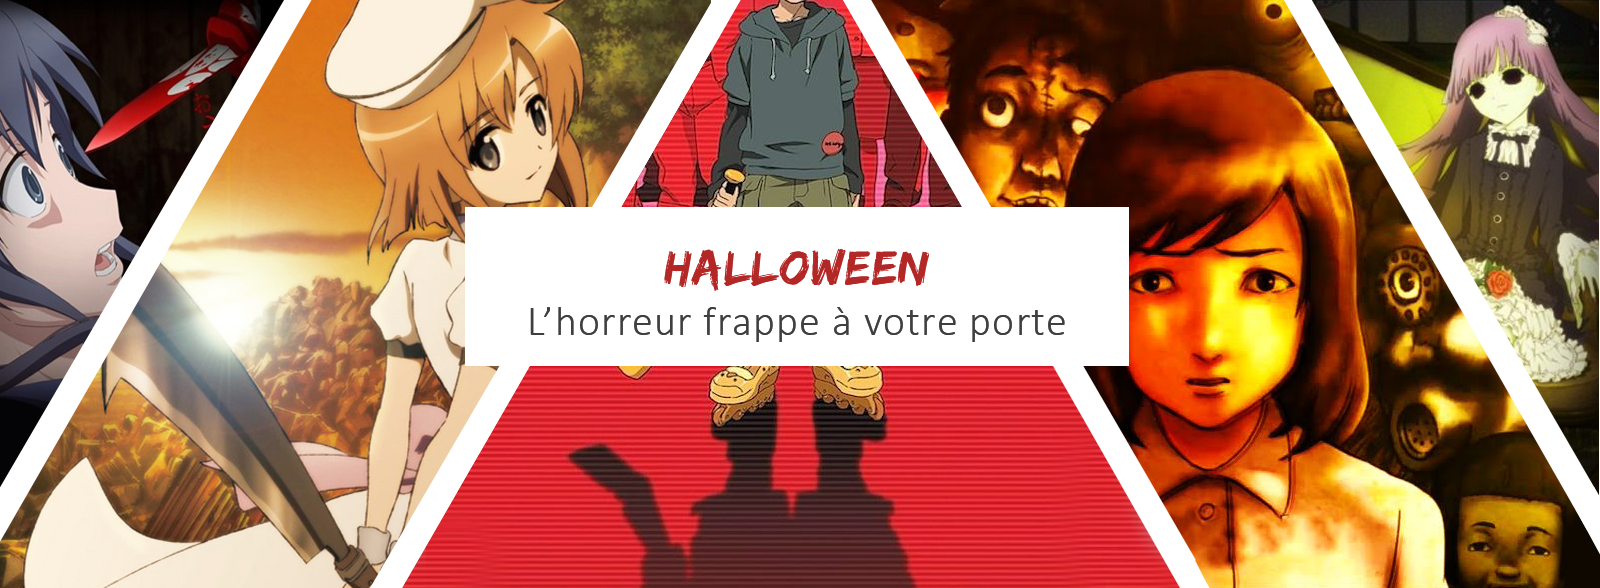 Japanimation Halloween Quand Lhorreur Frappe à Votre Porte